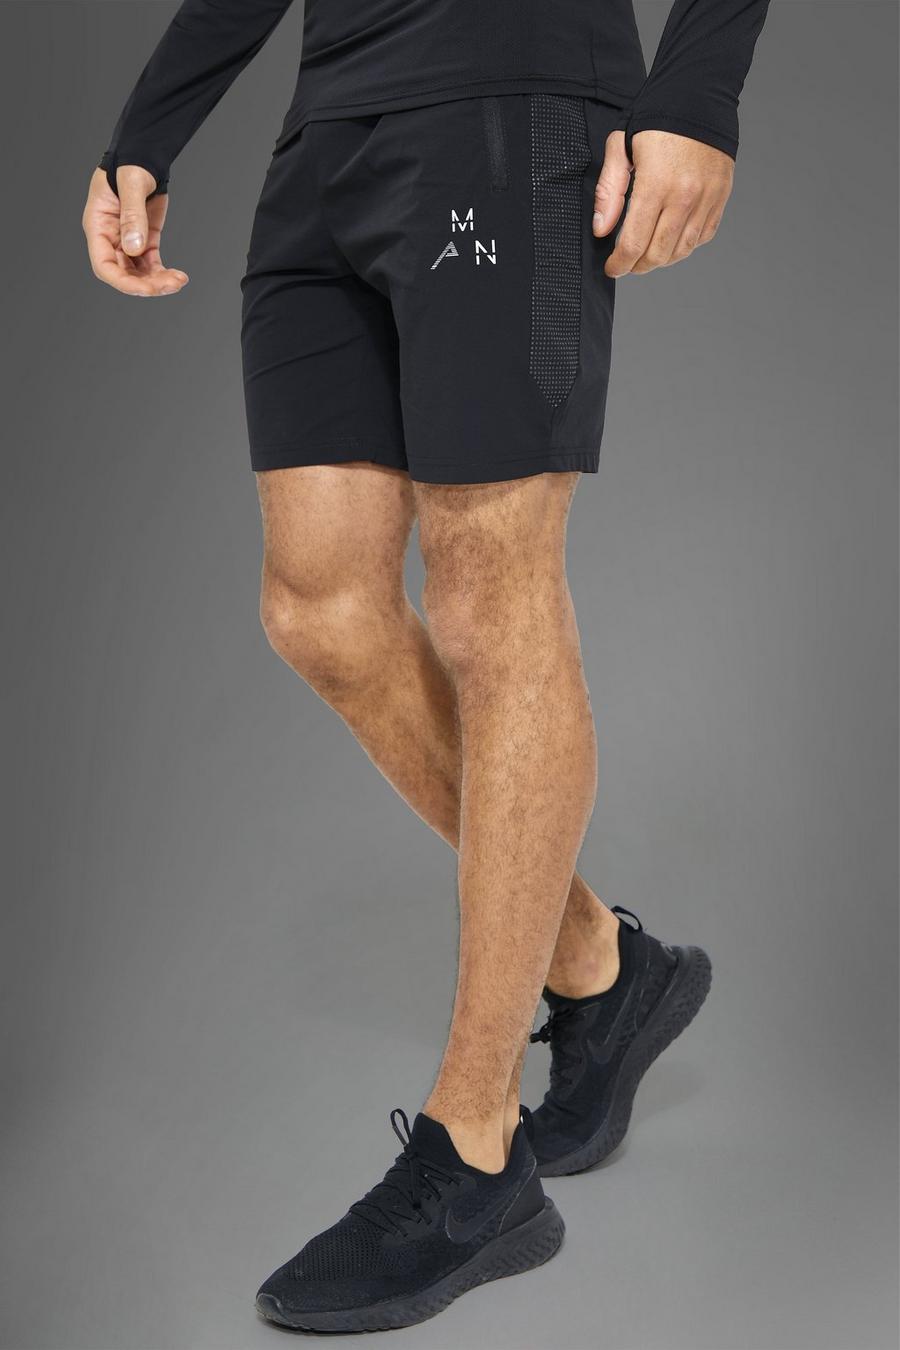 Pantalón corto MAN Active deportivo con panel reflectante, Black negro